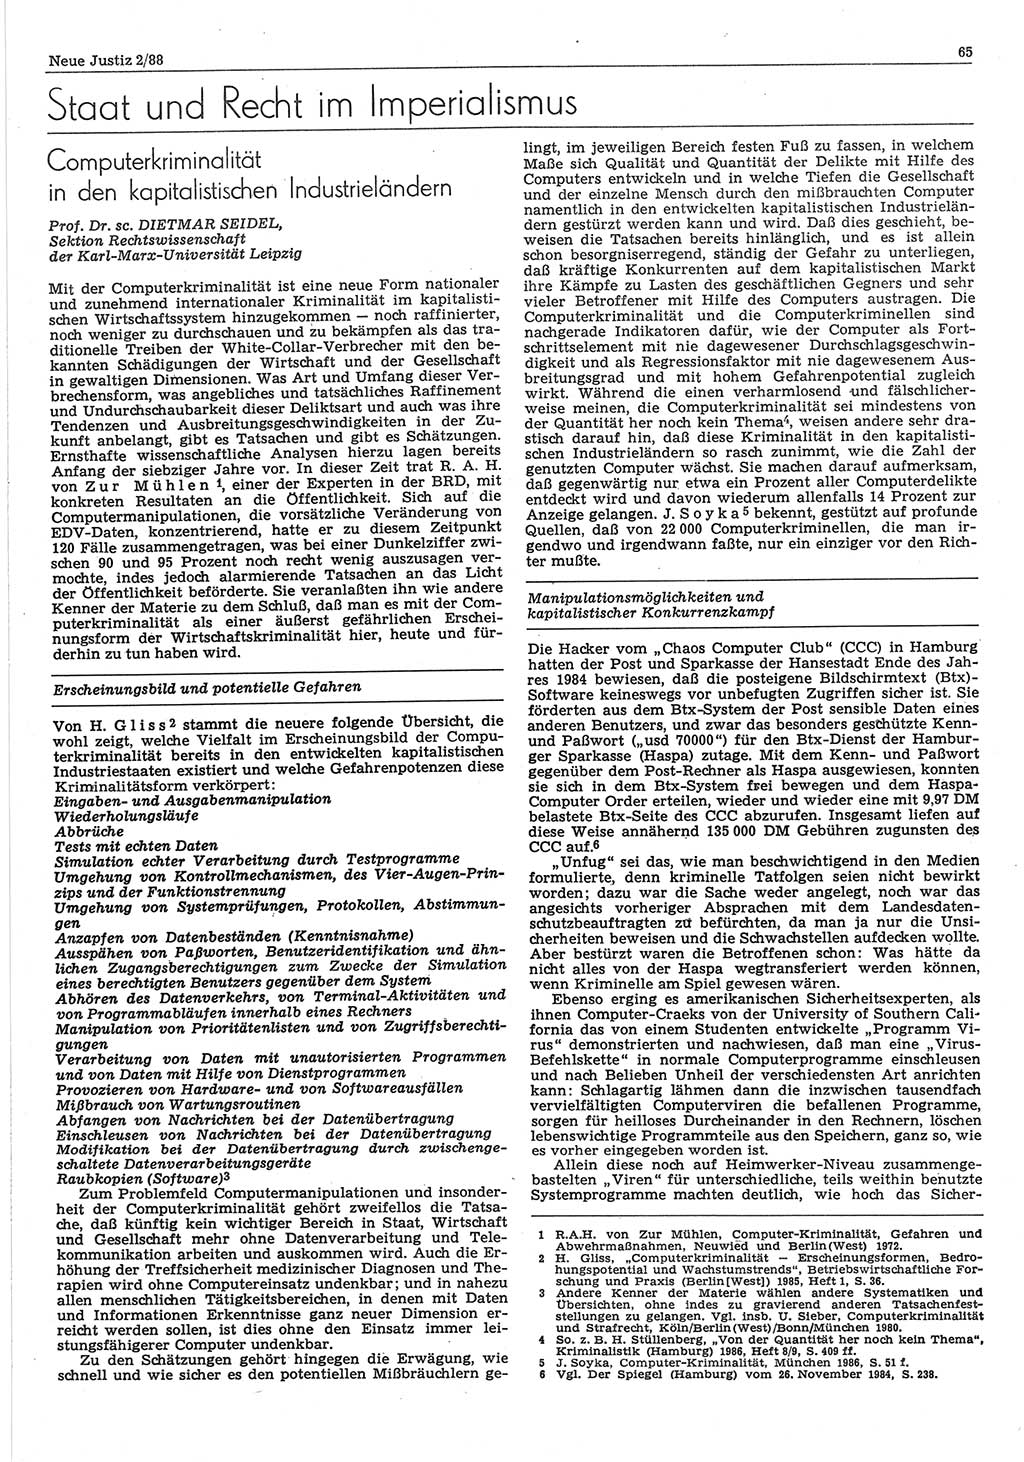 Neue Justiz (NJ), Zeitschrift für sozialistisches Recht und Gesetzlichkeit [Deutsche Demokratische Republik (DDR)], 42. Jahrgang 1988, Seite 65 (NJ DDR 1988, S. 65)